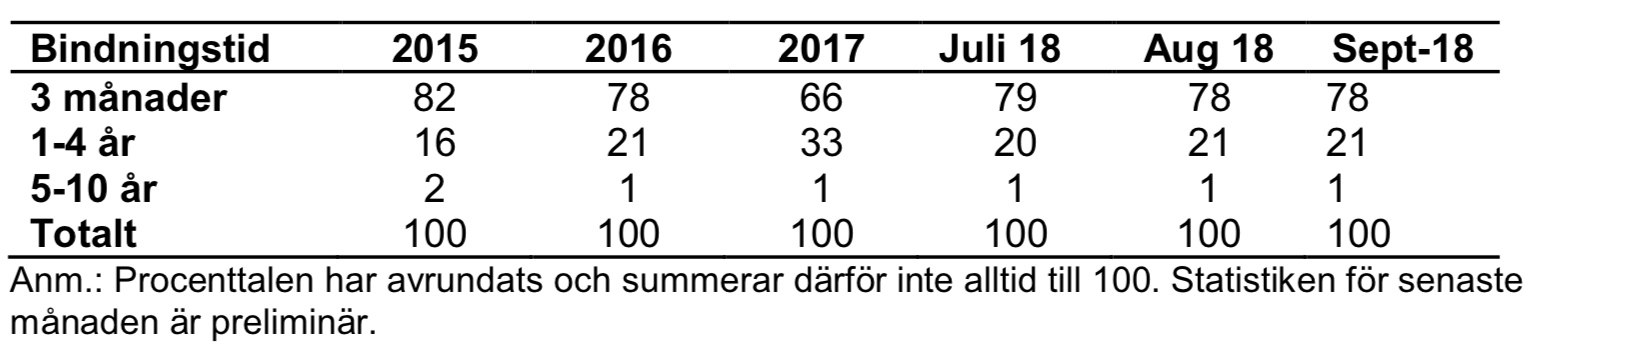 Tabell över hur bindningstiderna var fördelade för privatkunder fram till augusti 2018